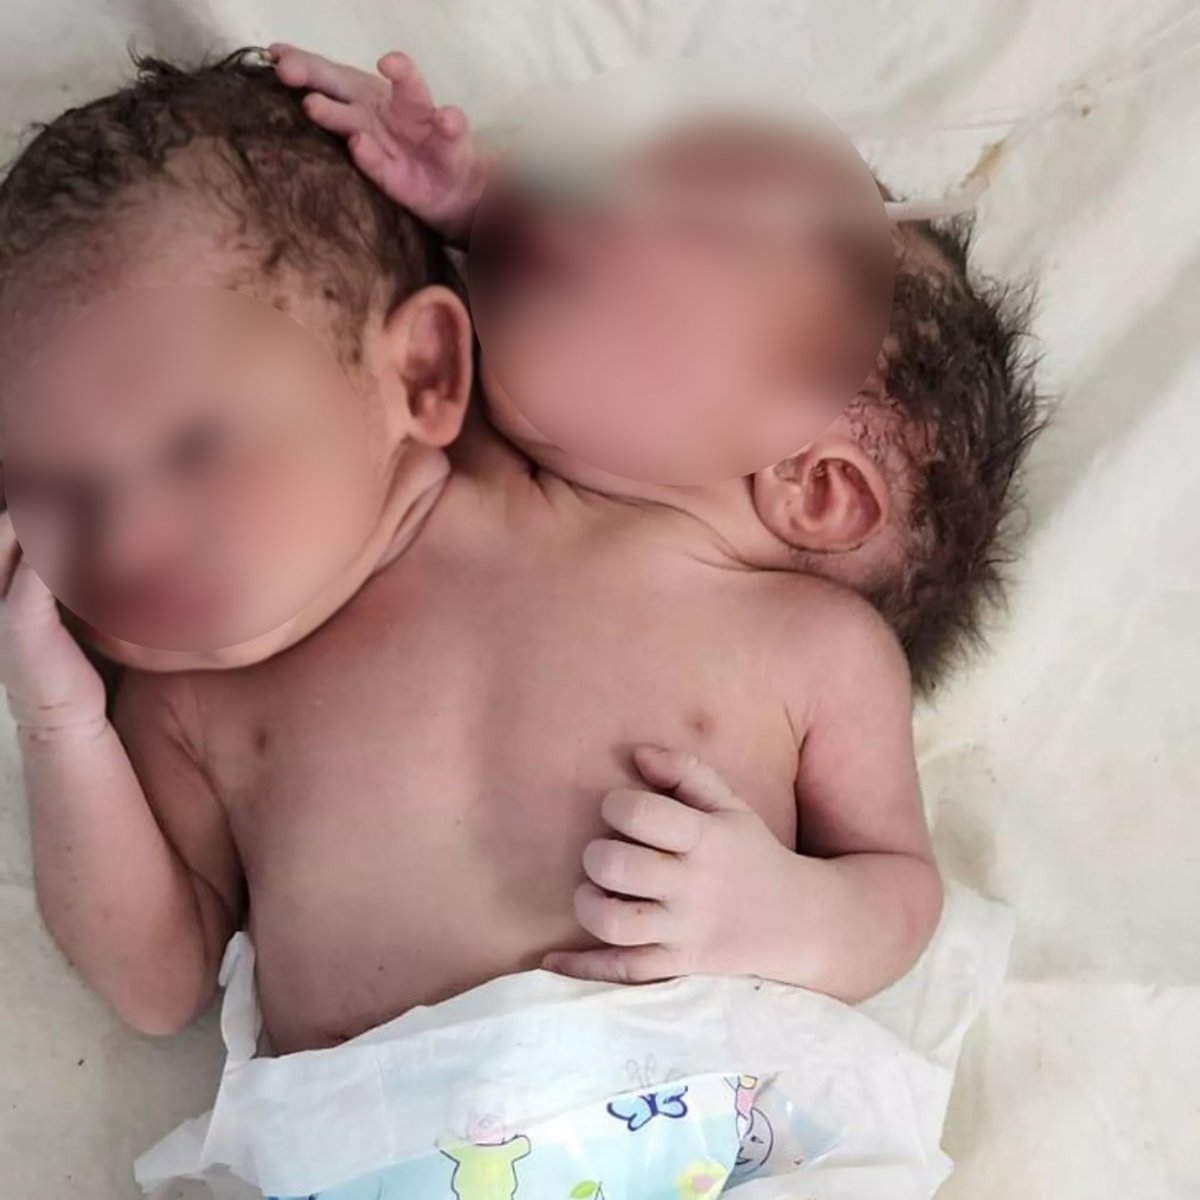 Hindistan da çift başlı bebek dünyaya geldi #1